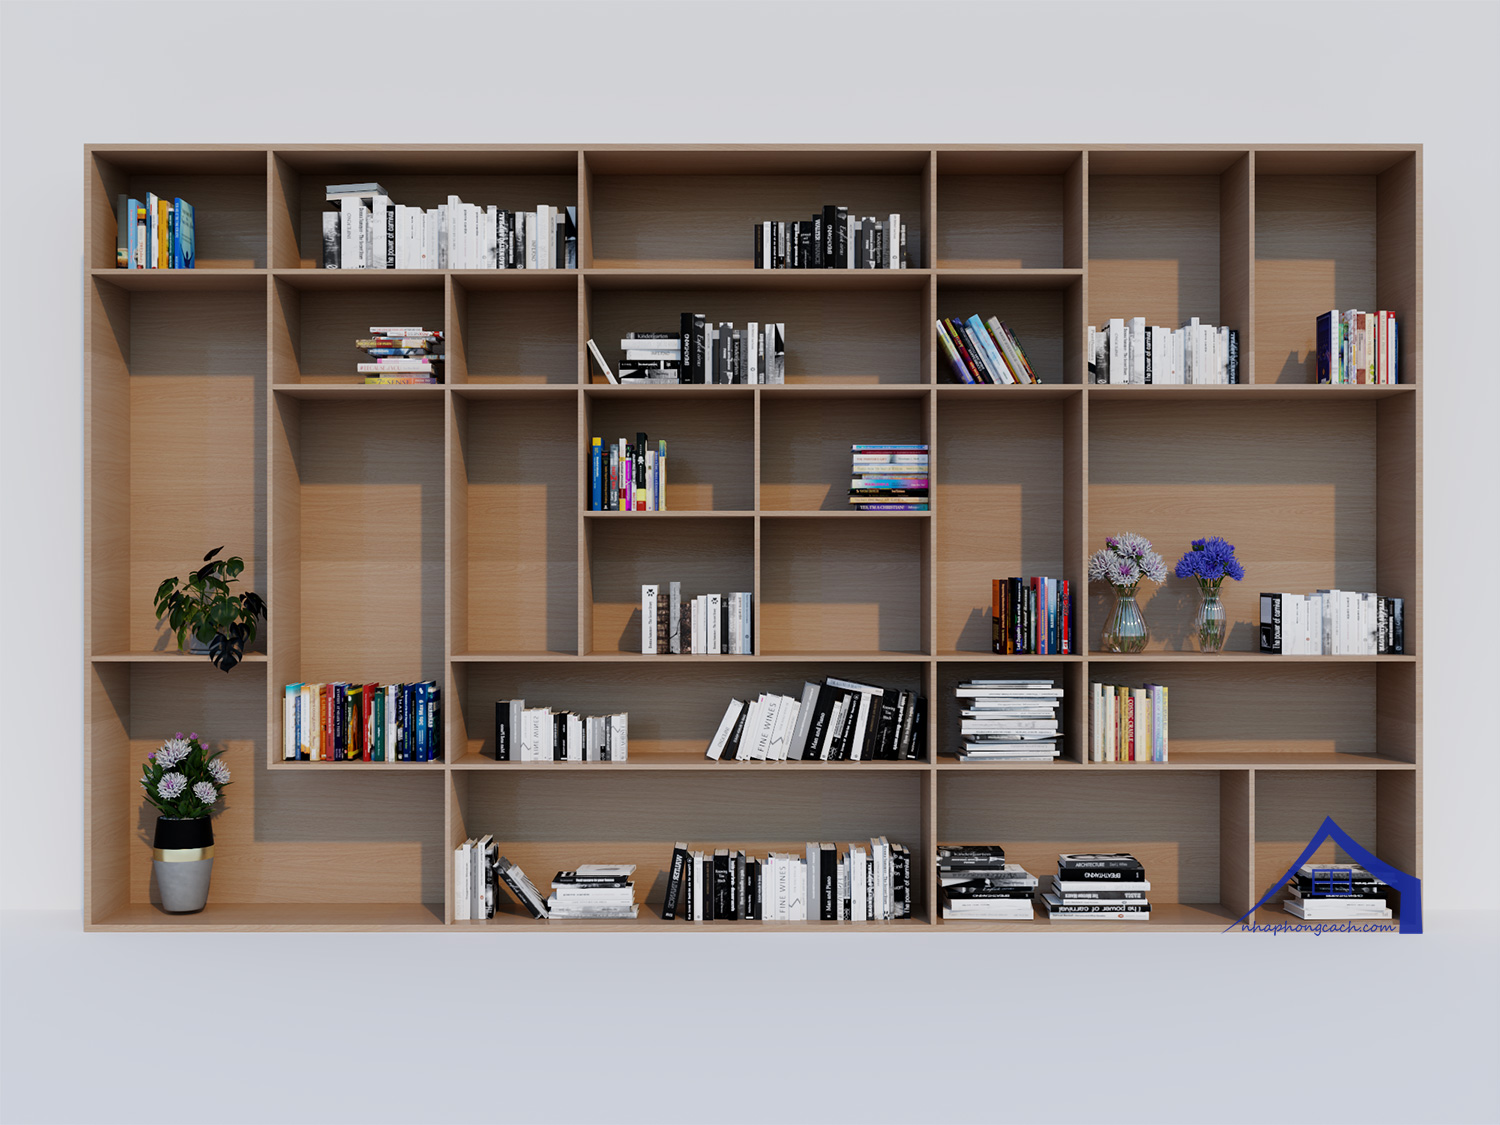 rectangle-shape-bookshelf---ke-sach-hinh-chu-nhat_2